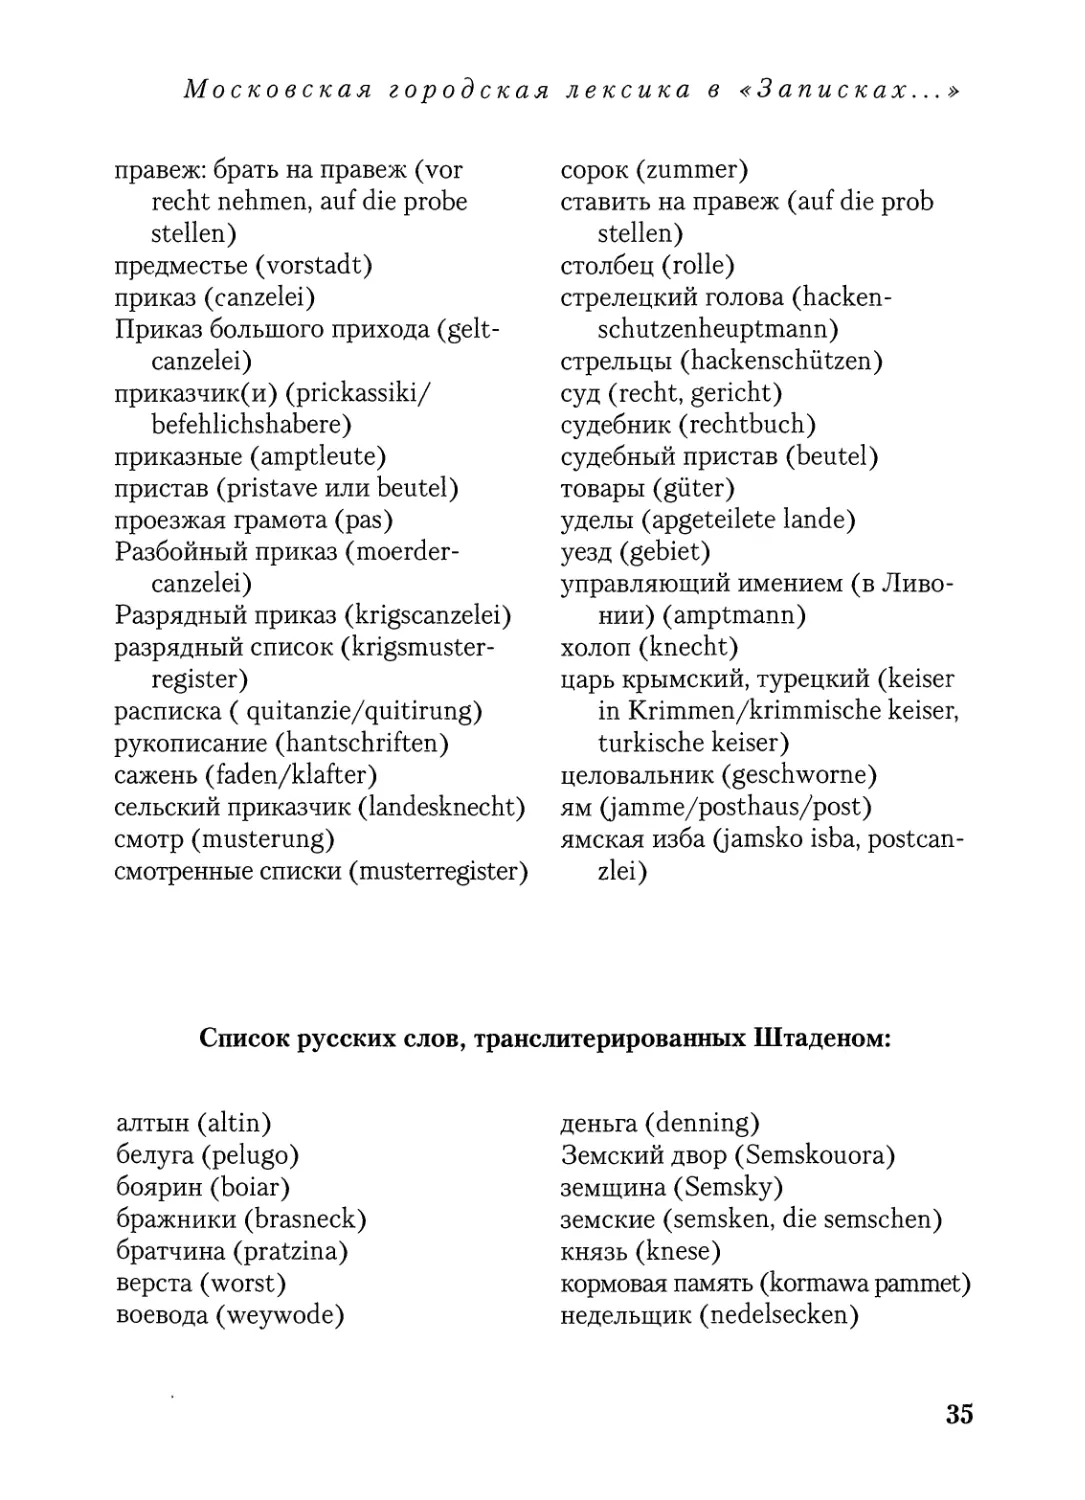 Список русских слов, транслитерированных Штаденом